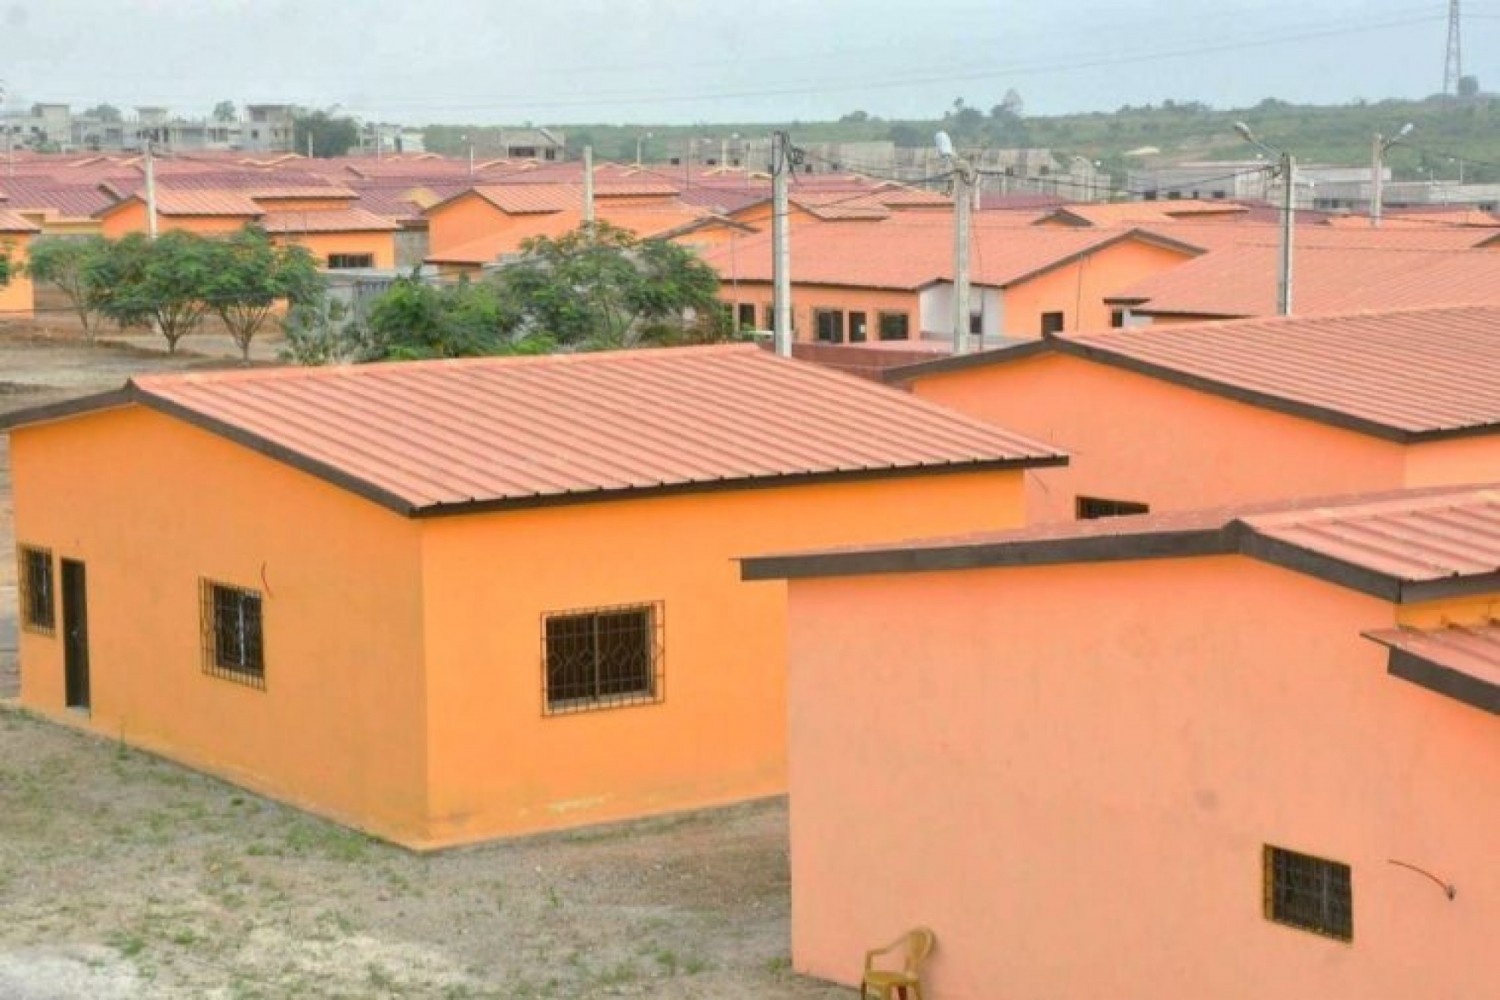 Côte d'Ivoire : Le ministère de la construction met en garde contre le programme immobilier non autorisé « Cité Krom 1 » à Bingerville